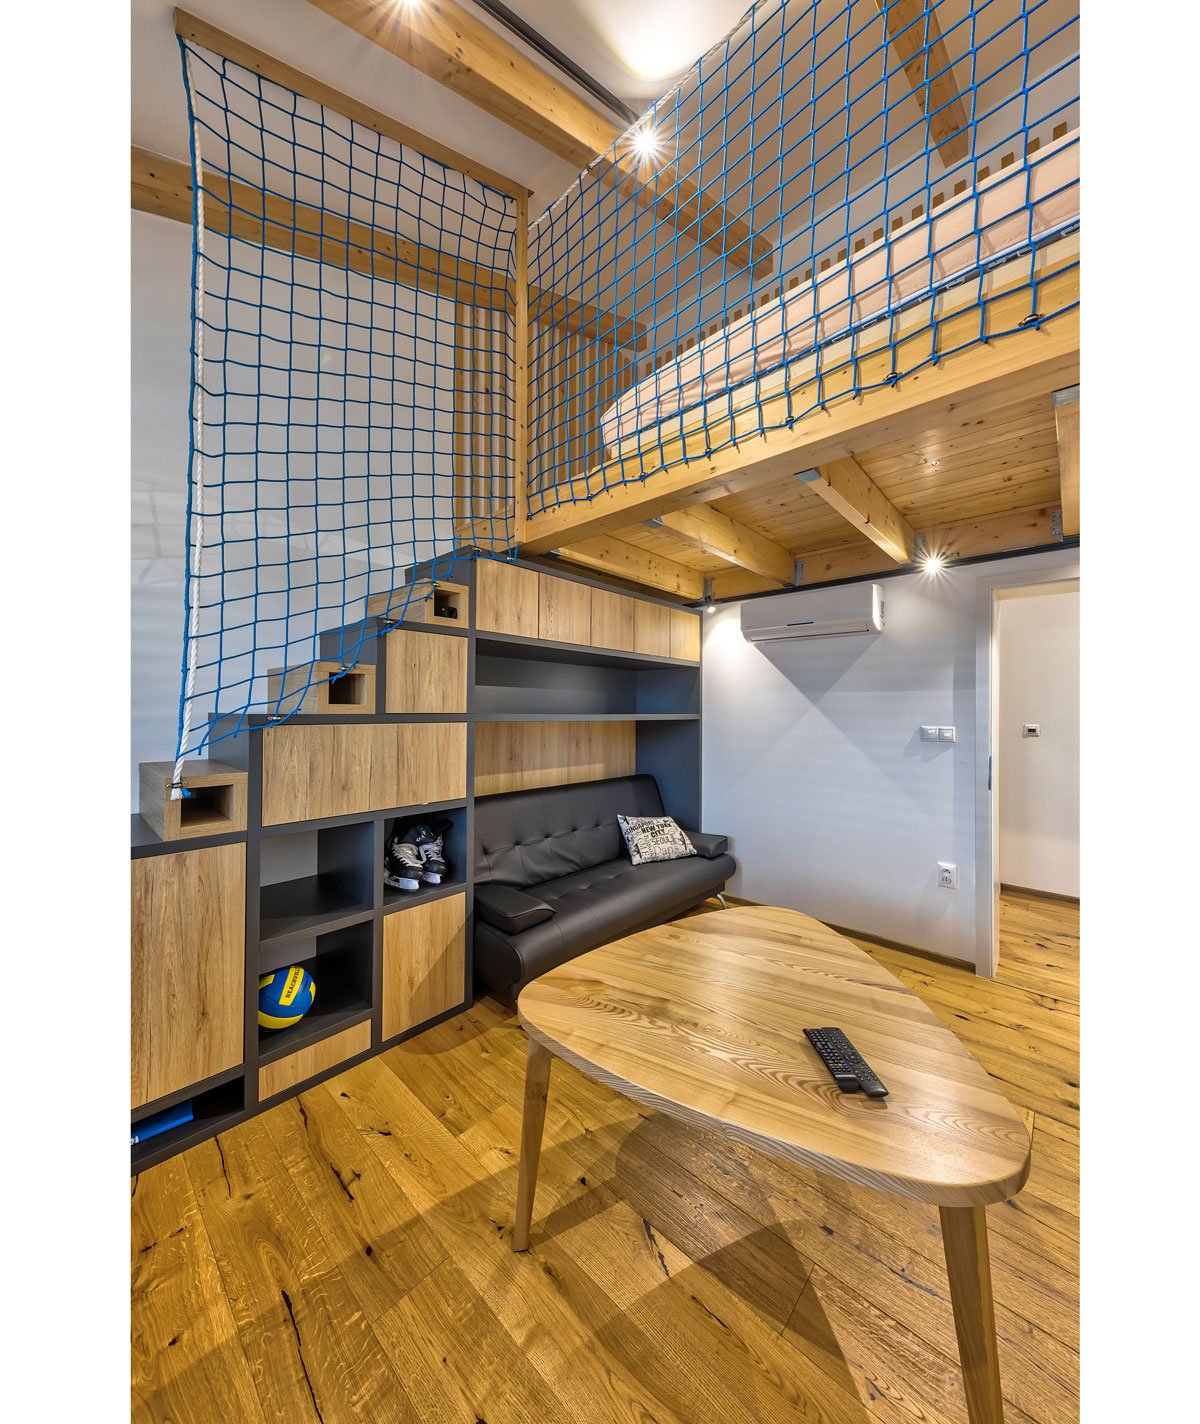 industriální interiér s dřevěným nábytkem a síti místo zábradlí